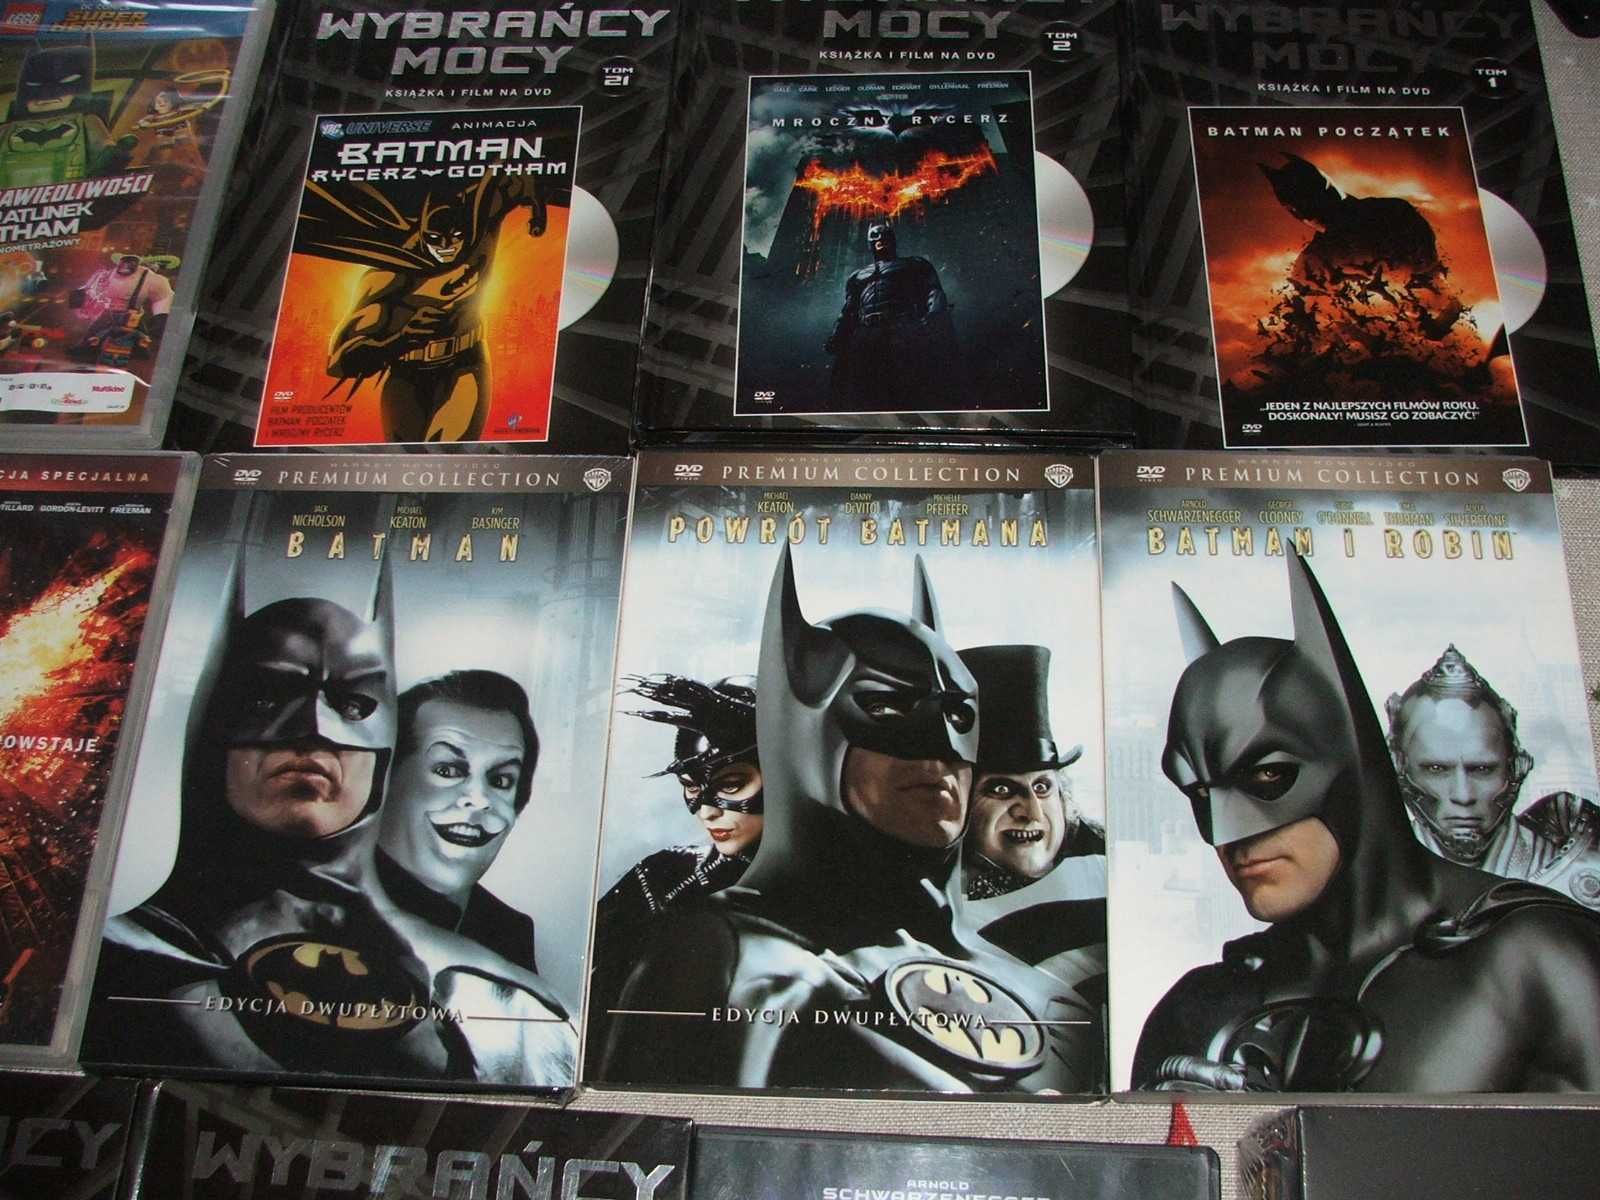 Batman kolekcja premium, wyd. 1 i 2 dvd, wszystie też anime